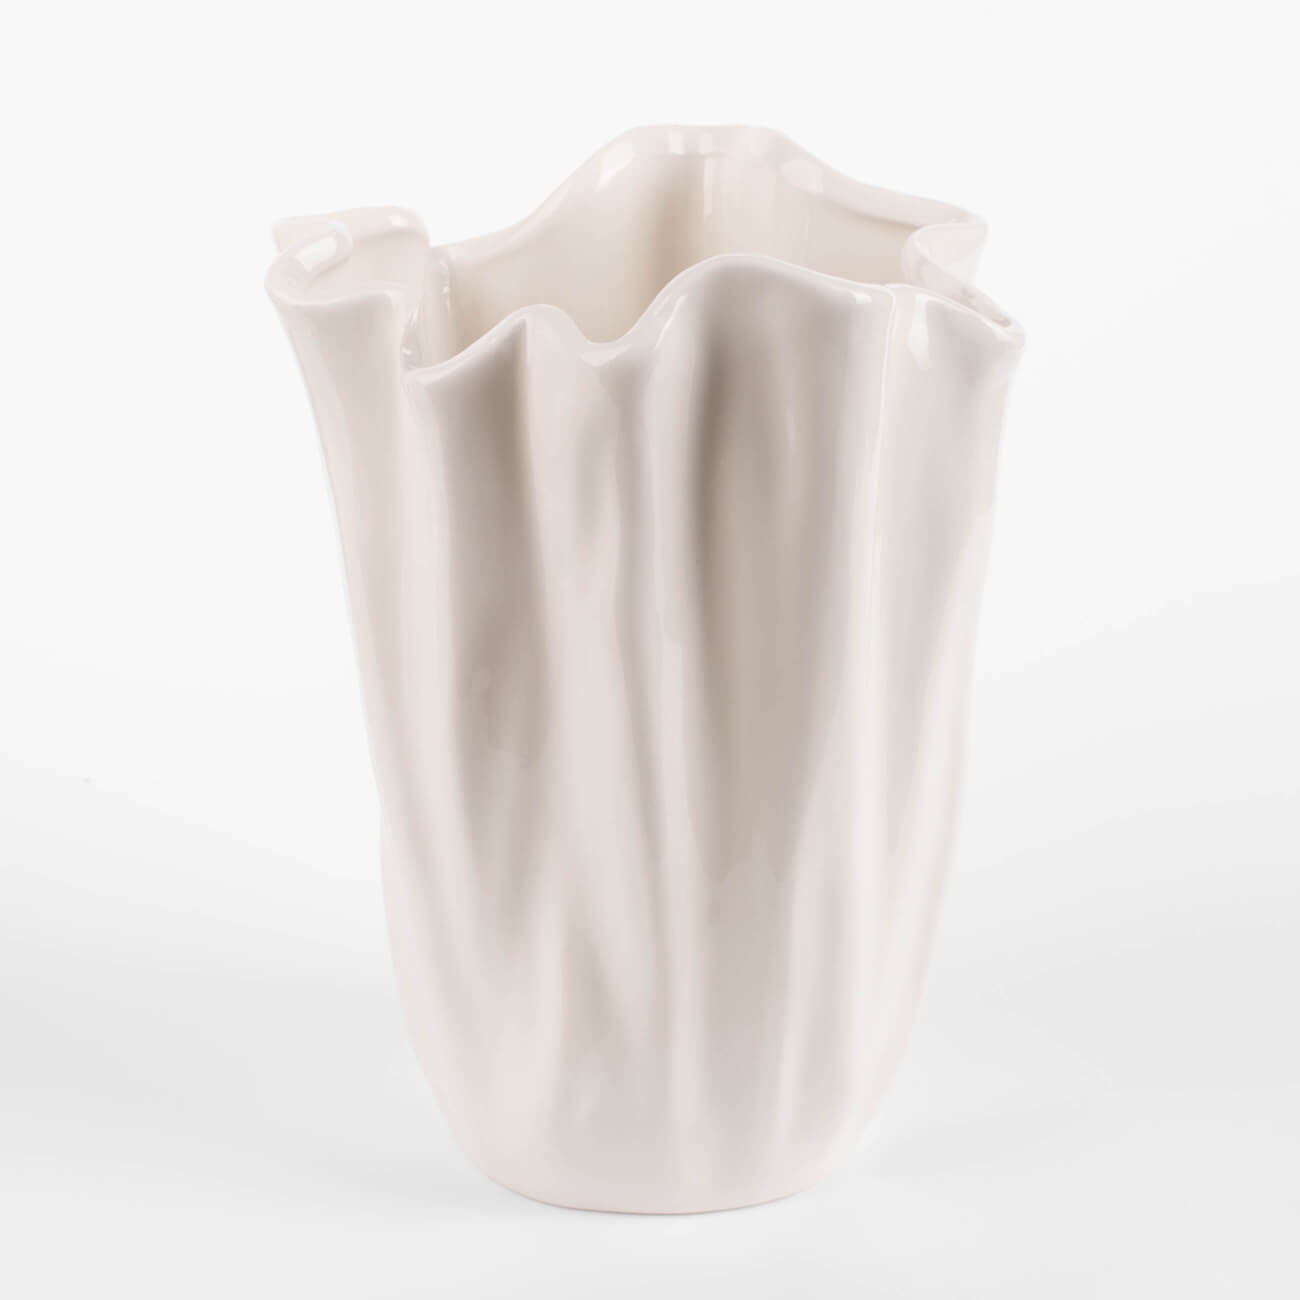 Ваза для цветов, 24 см, керамика, молочная, Мятый эффект, Crumple ваза для ов 24 см керамика белая мятый эффект crumple